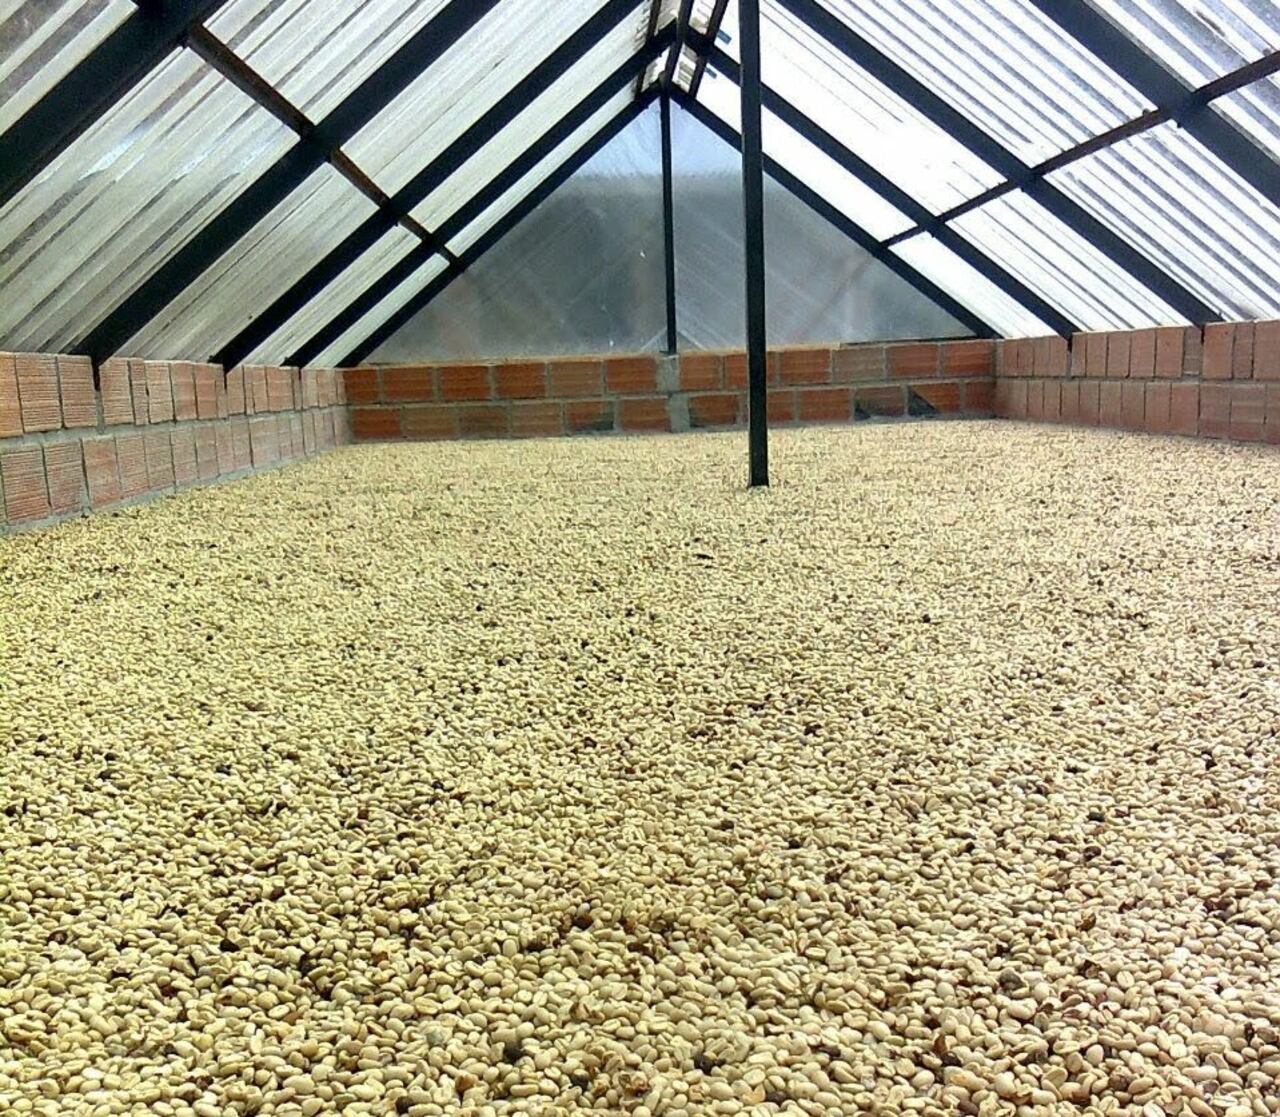 Para estos primeros seis meses de 2023 en el departamento del Quindío se tiene como meta la recolección de 120.000 sacos de café tipo pergamino seco